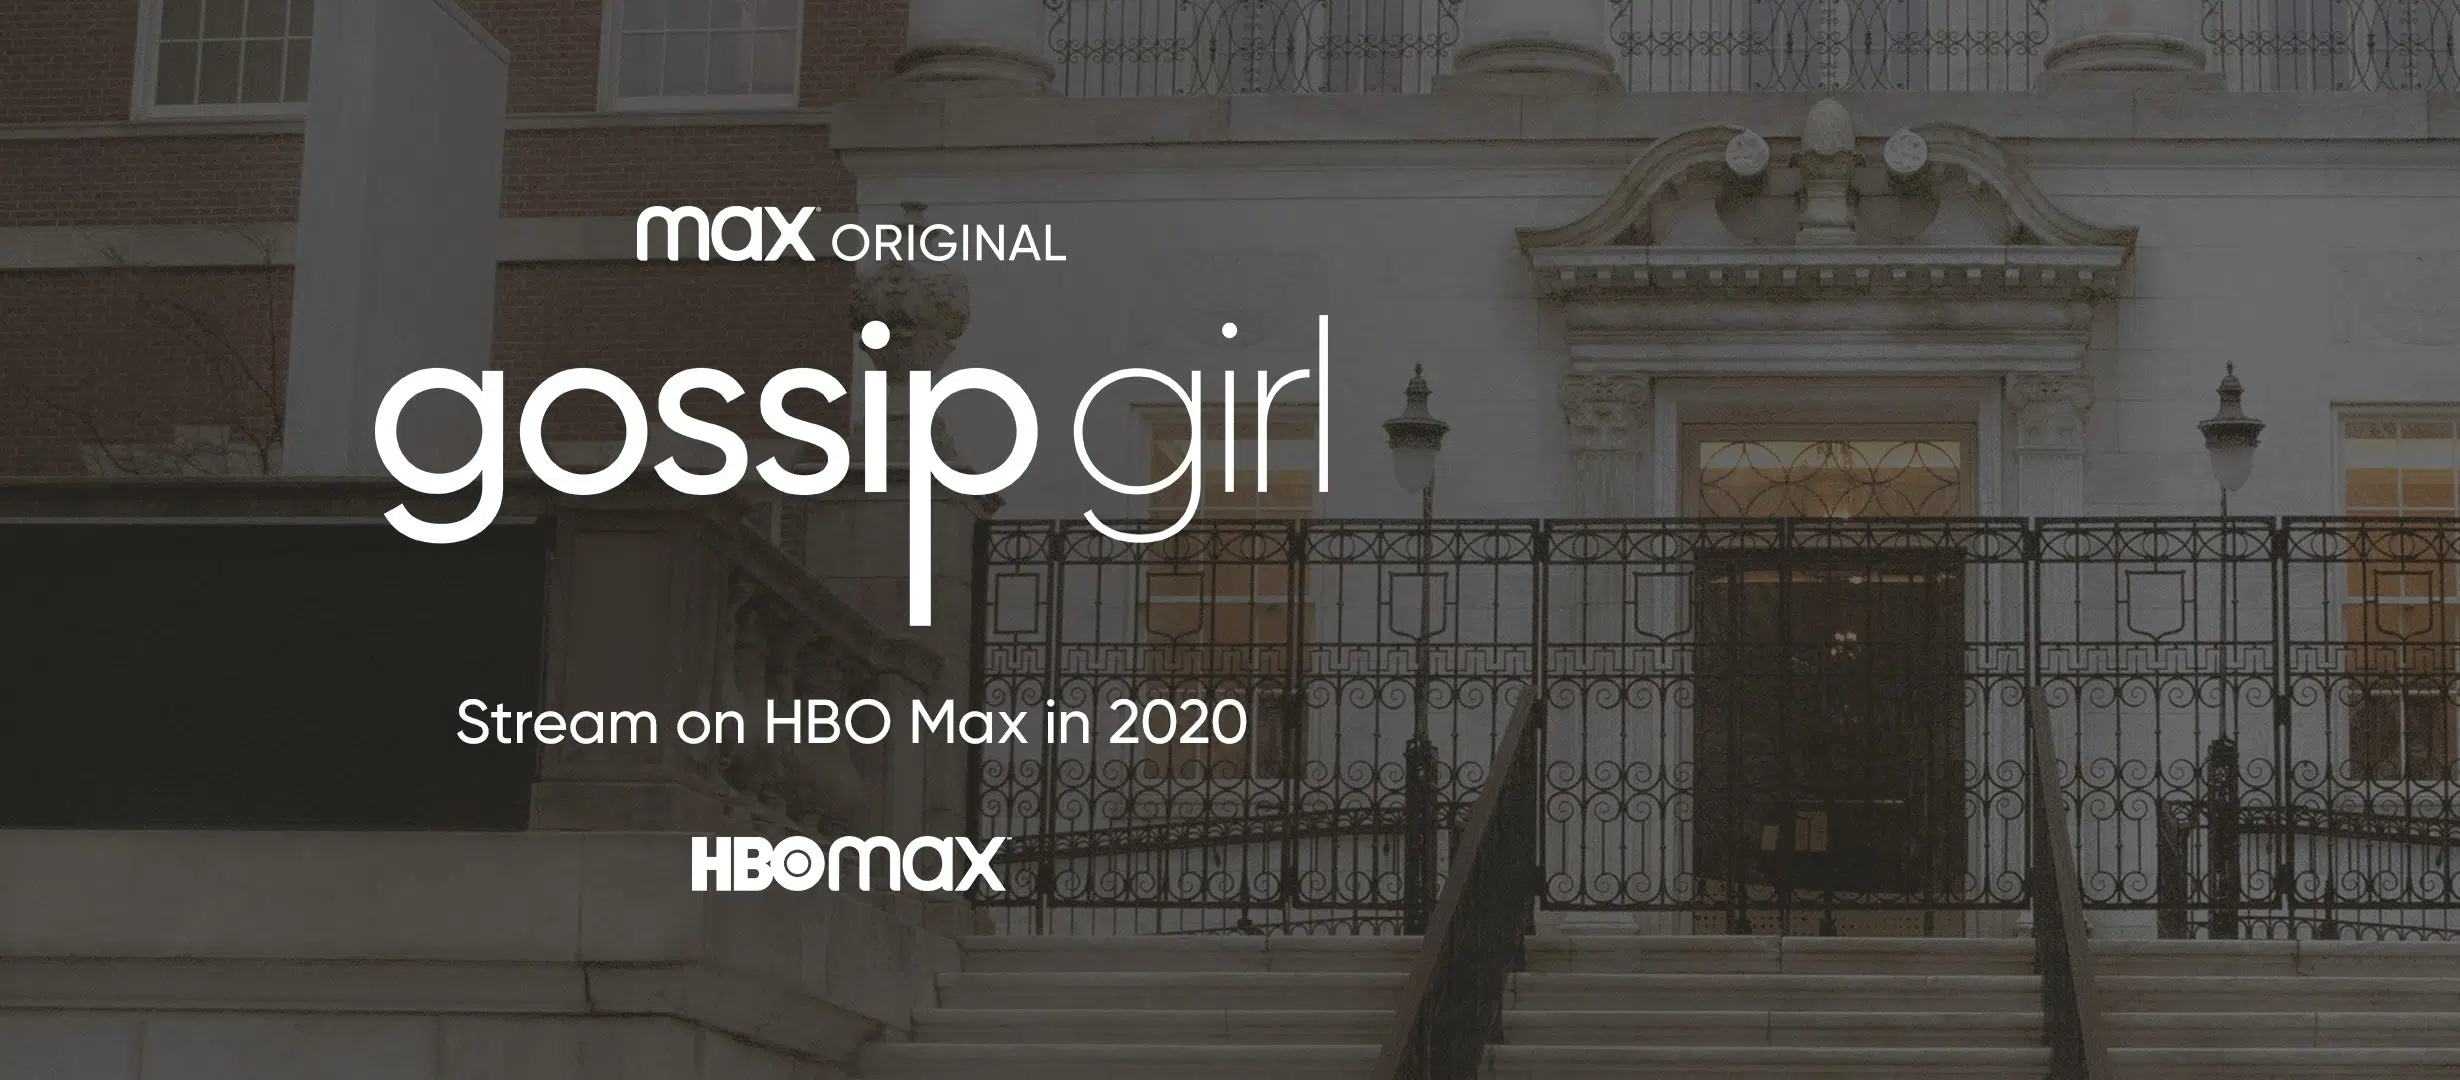 The Gossip Girl Reboot Postponed To 2021